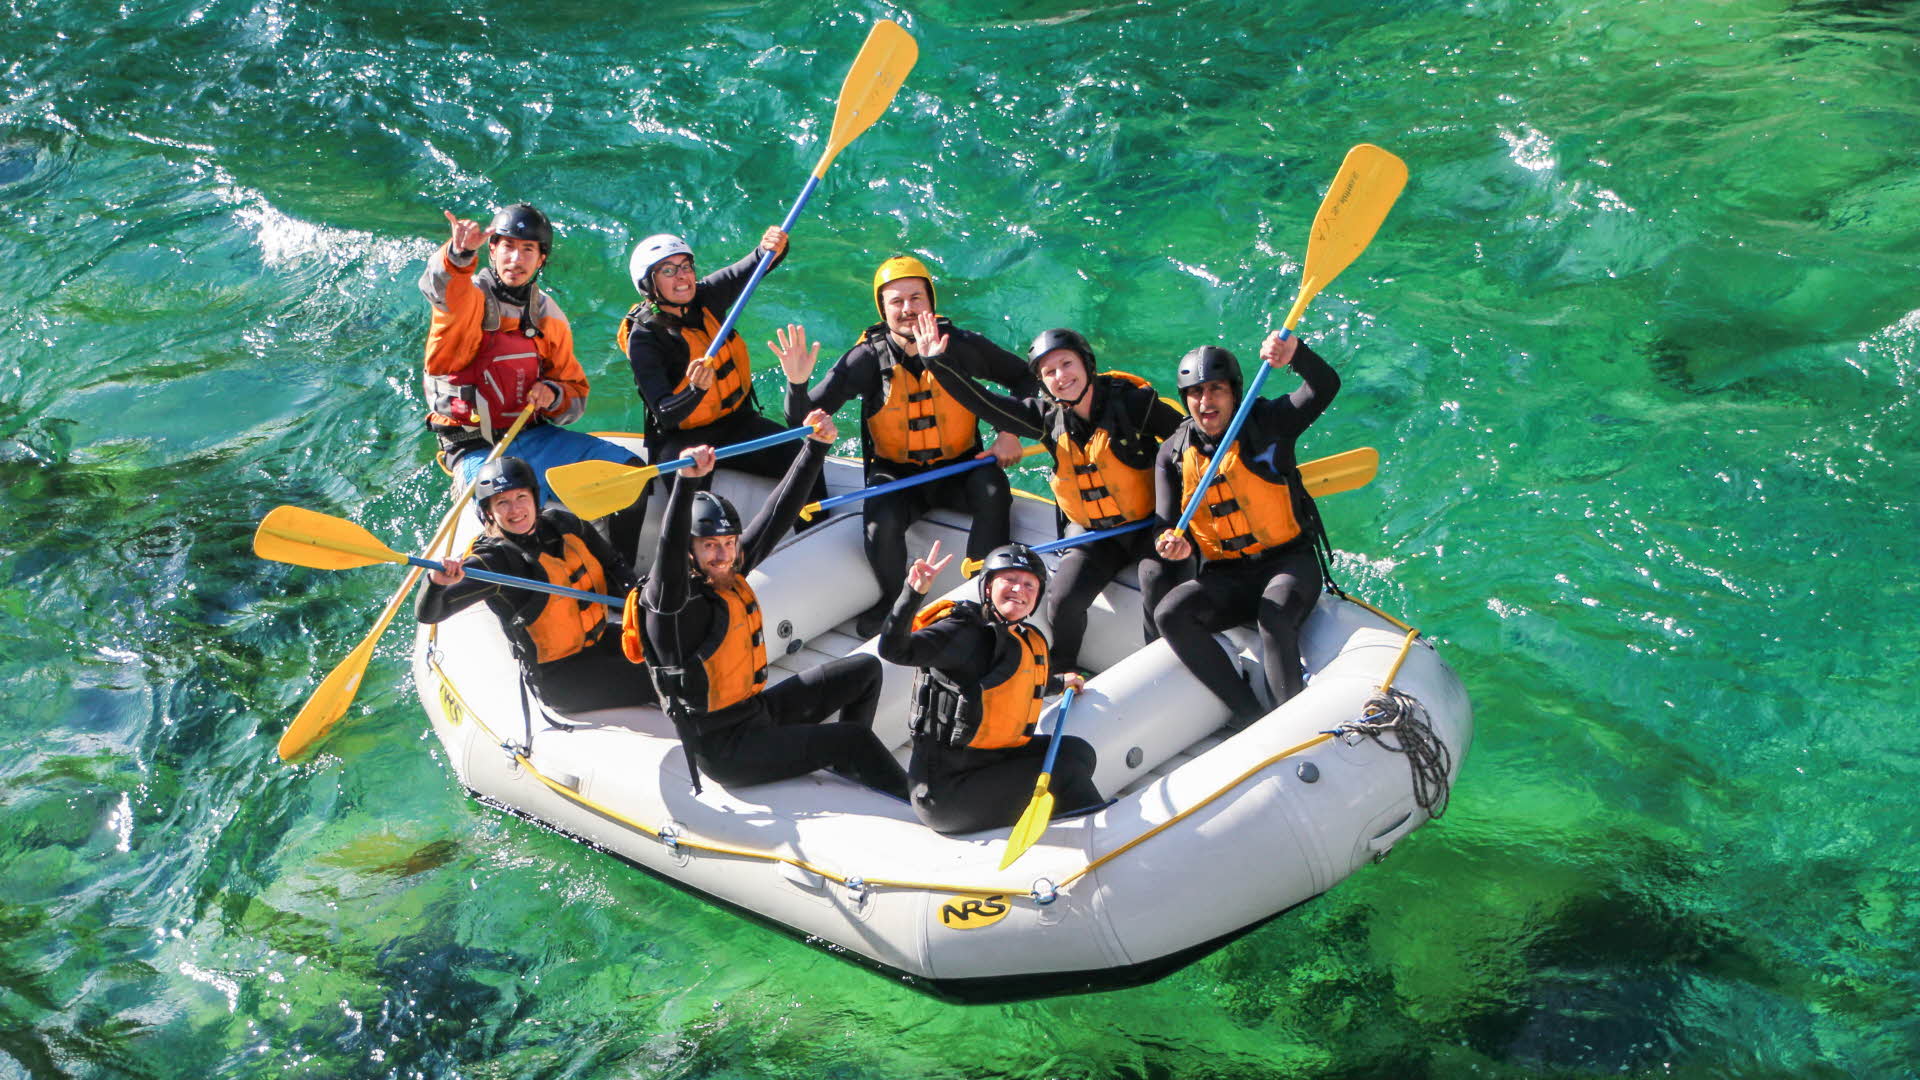 Una balsa con ocho personas que agitan sus manos en un río de aguas color verde claro.